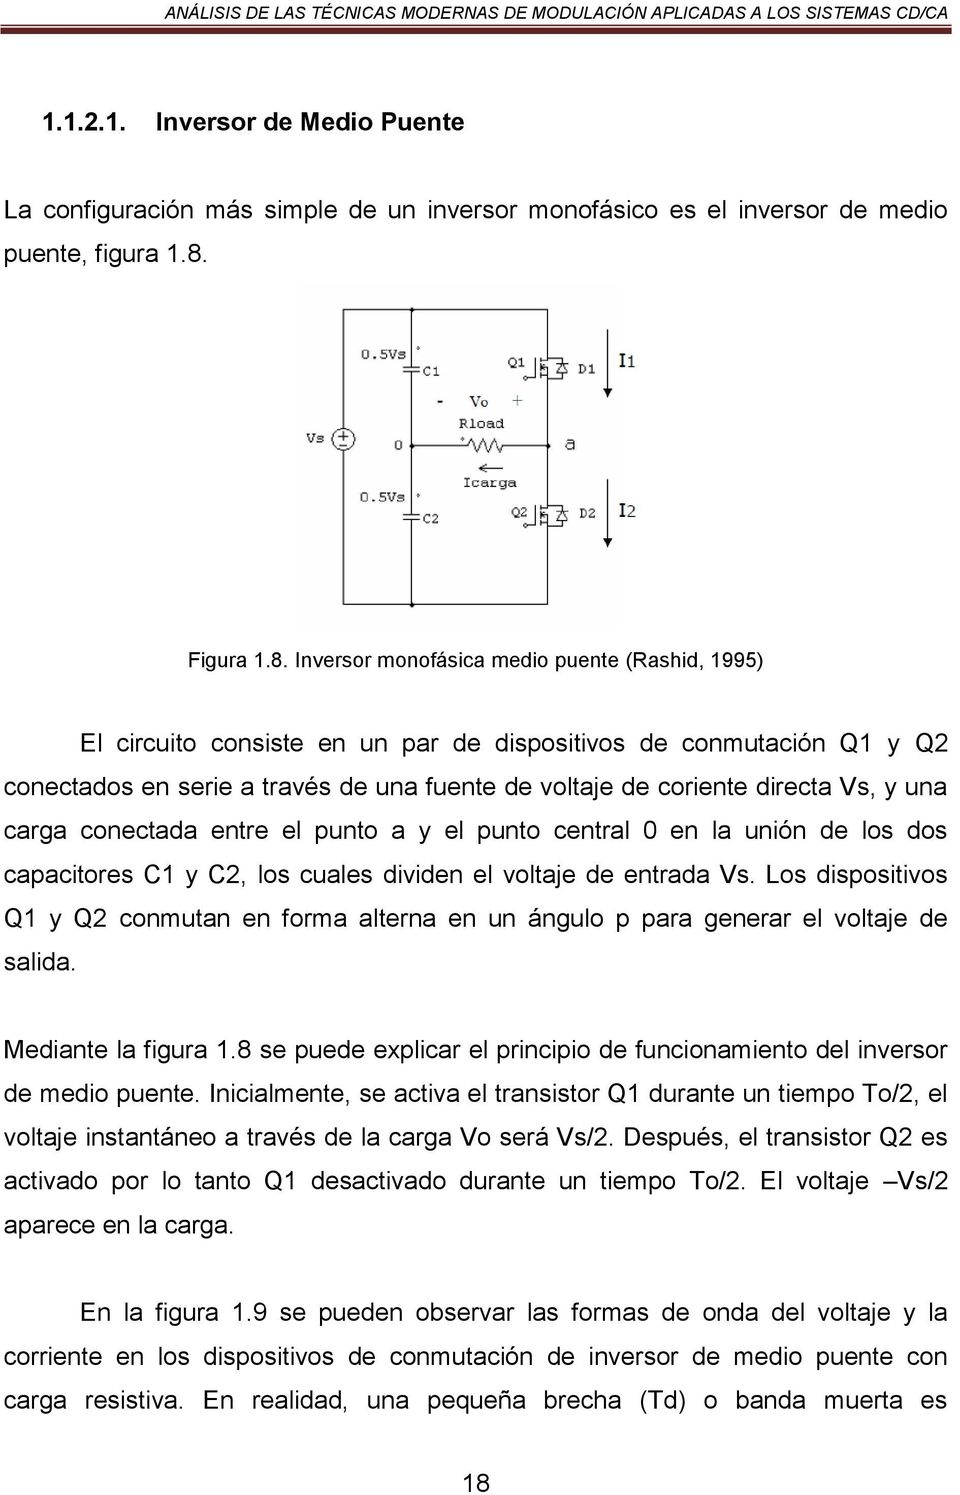 Inversor monofásica medio puente (Rashid, 1995) El circuito consiste en un par de dispositivos de conmutación Q1 y Q2 conectados en serie a través de una fuente de voltaje de coriente directa Vs, y